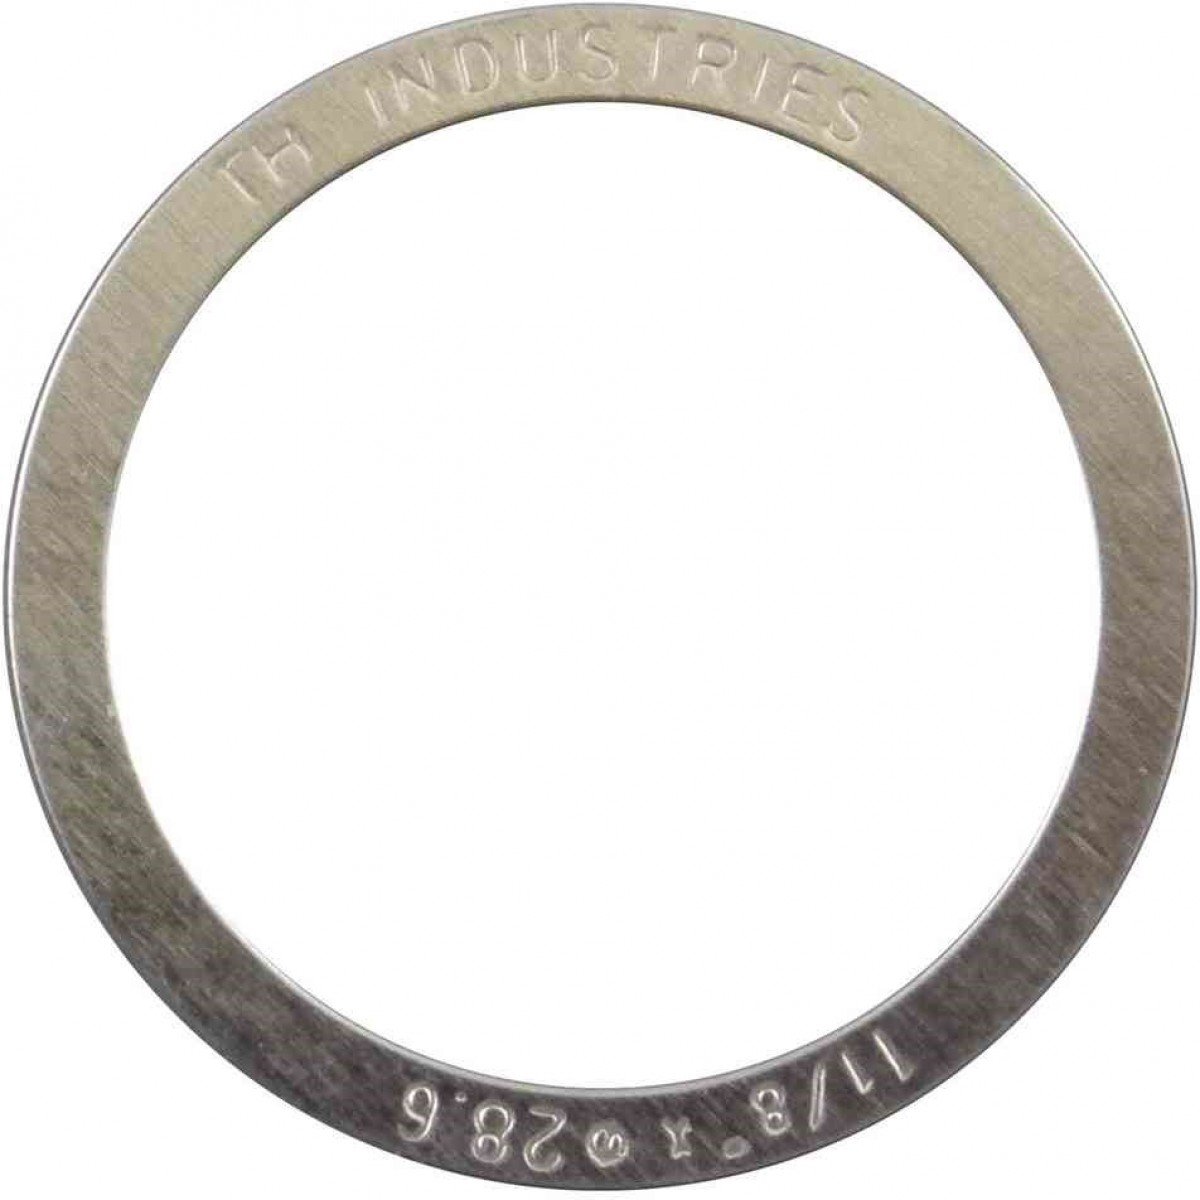 Микро-кольцо прокладочное Elvedes, для рулевой колонки 1-1/8, 0.25 мм, комплект 10 штук, 2017144-10 велосипедный подшипник рулевой колонки elvedes mr122 873e rs acb 1 1 8 ø30 2хø41х6 5 ø36хø45 2017135